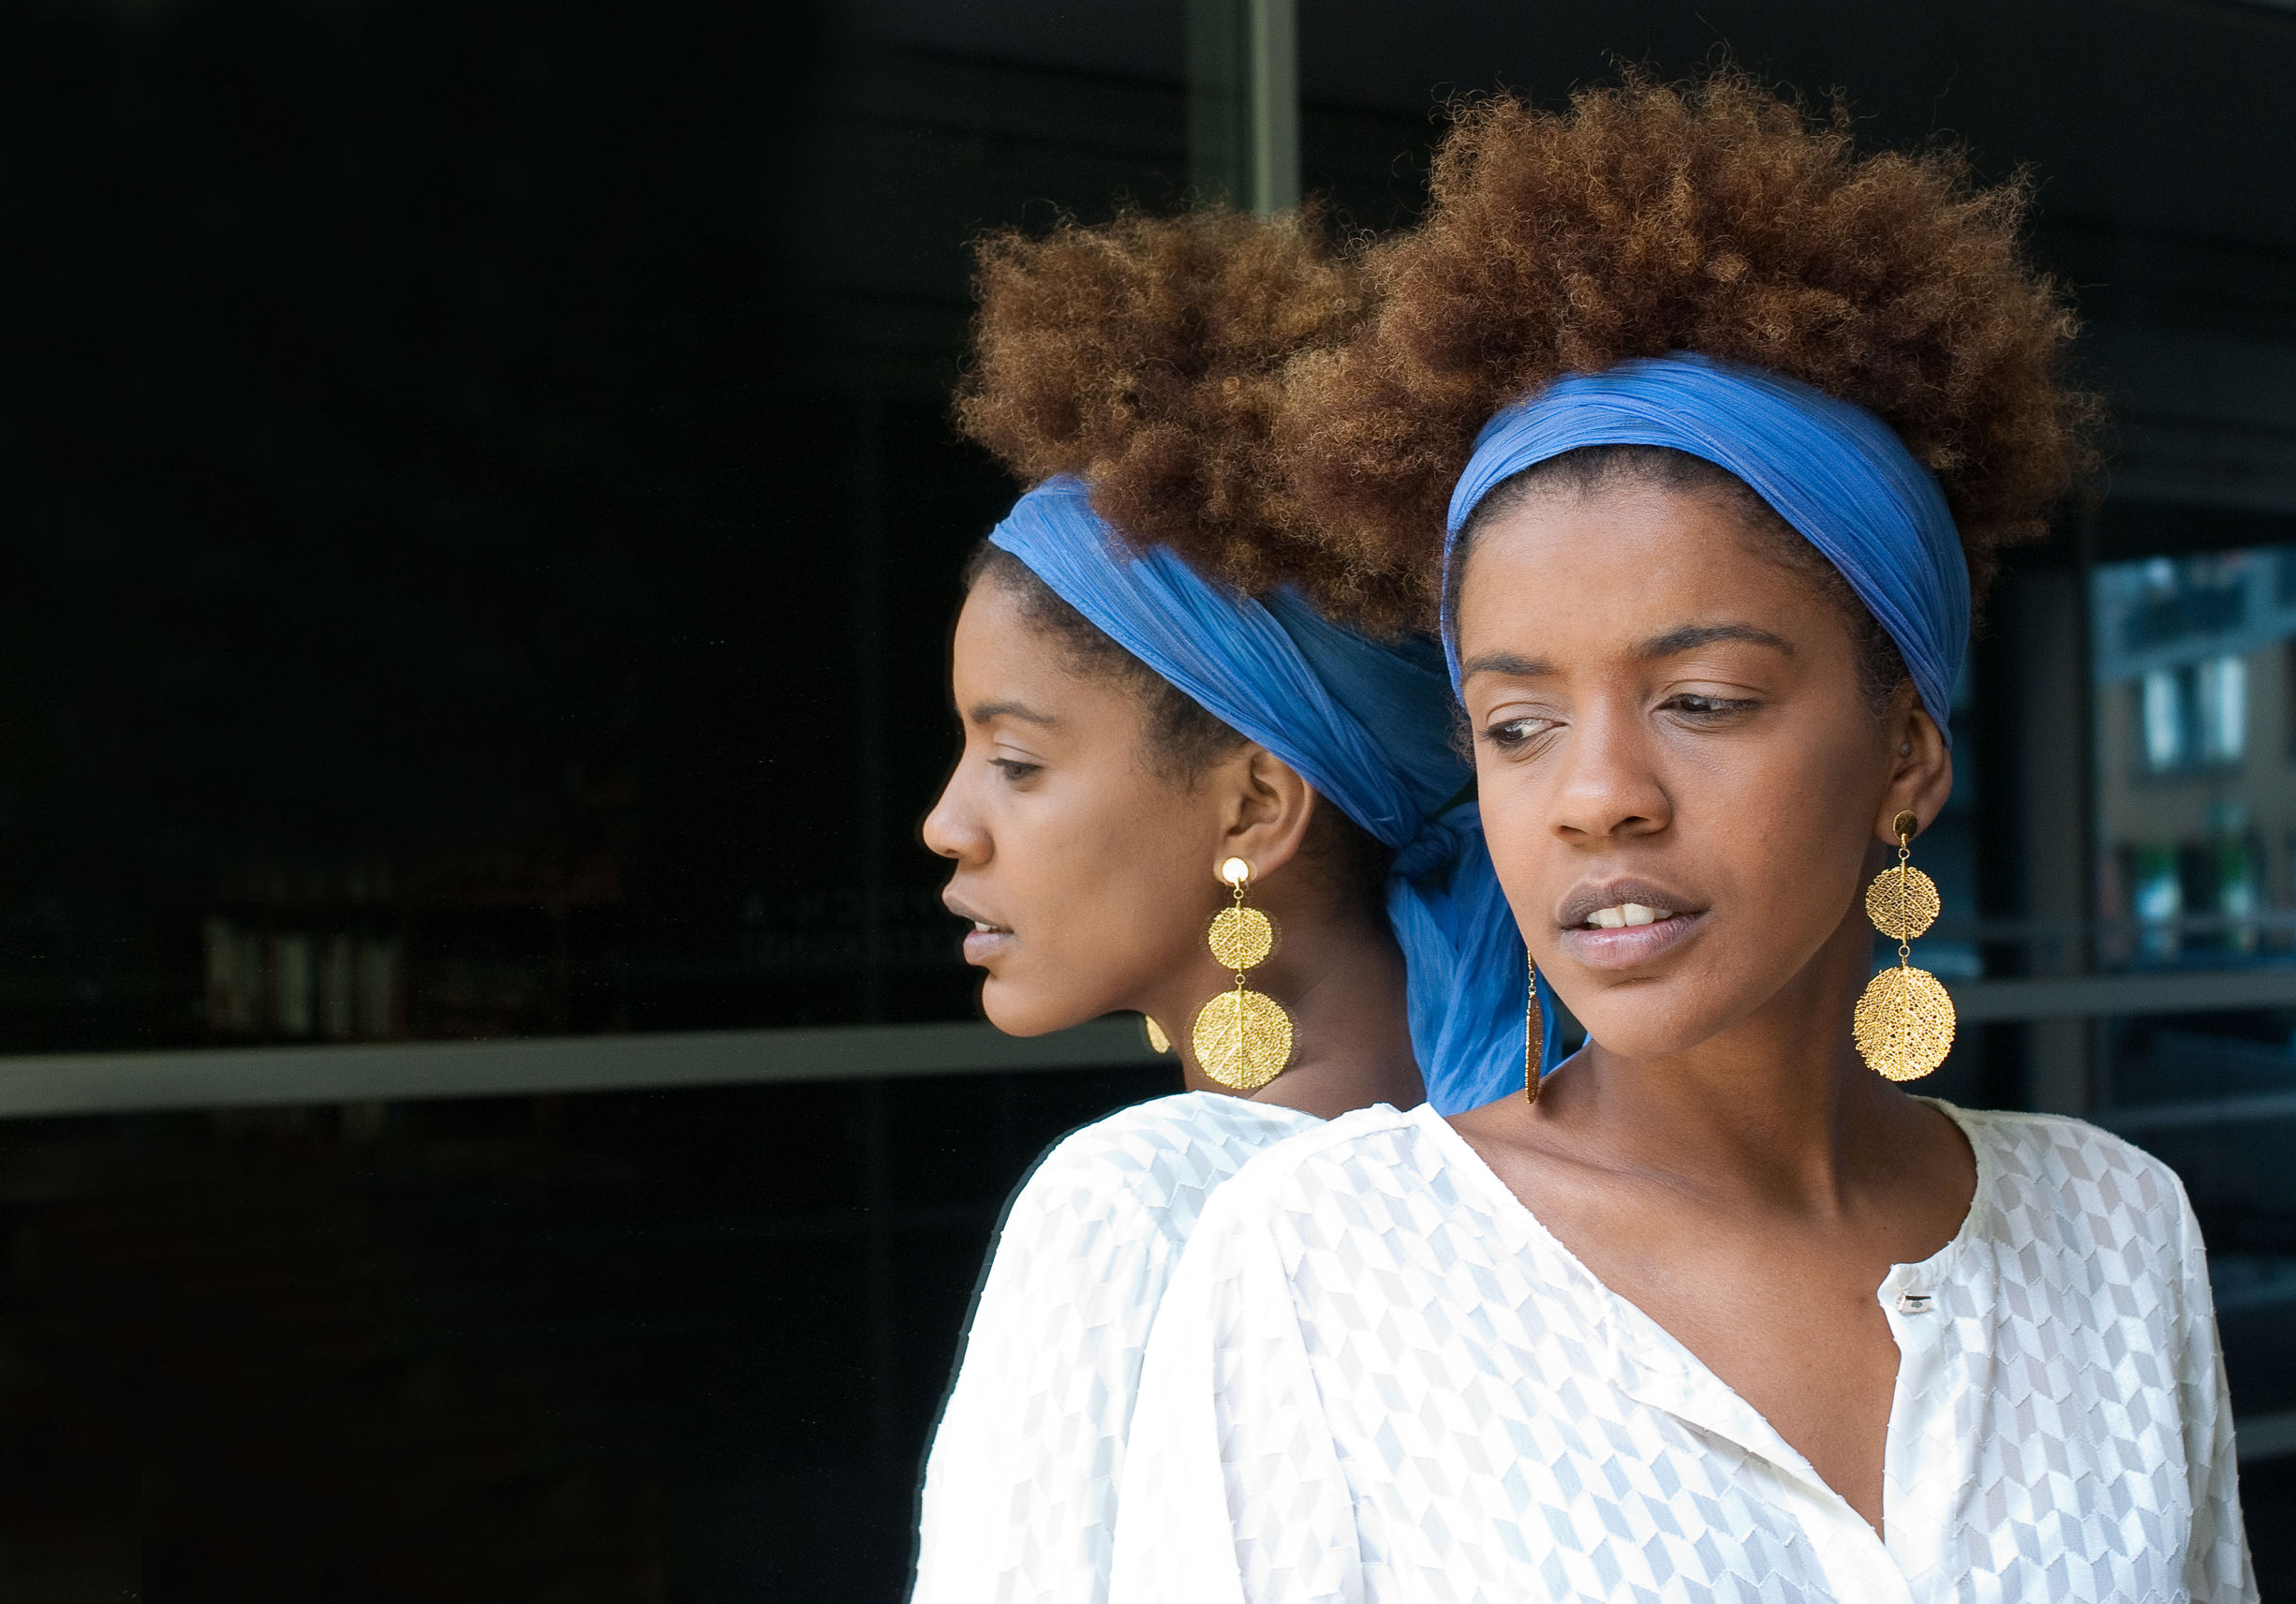 Afro hair trimming: cos'è, quando e come farlo?